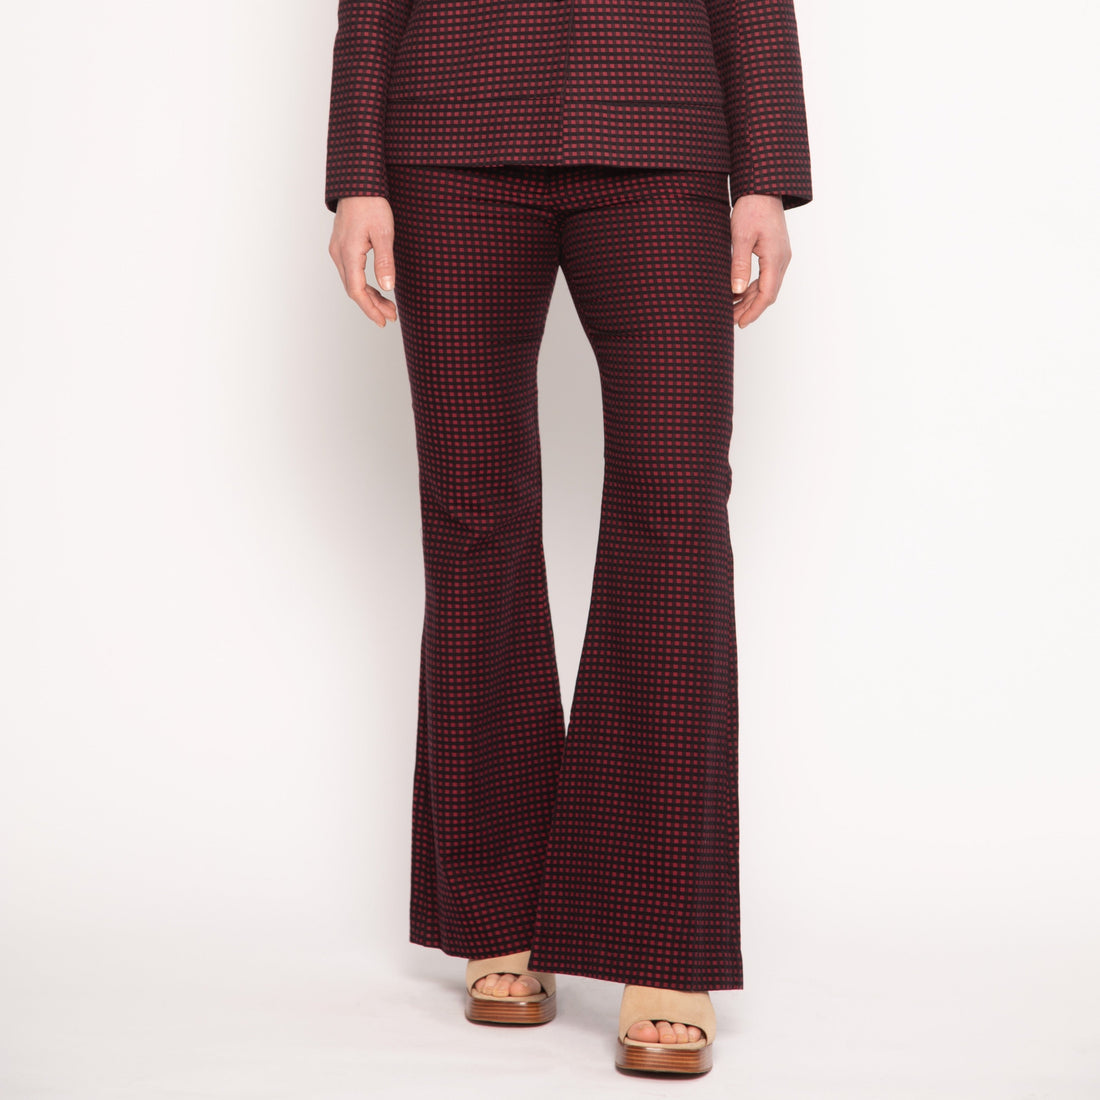 Pantalon tailleur femme - Vichy - Burgundy - NUYHENN